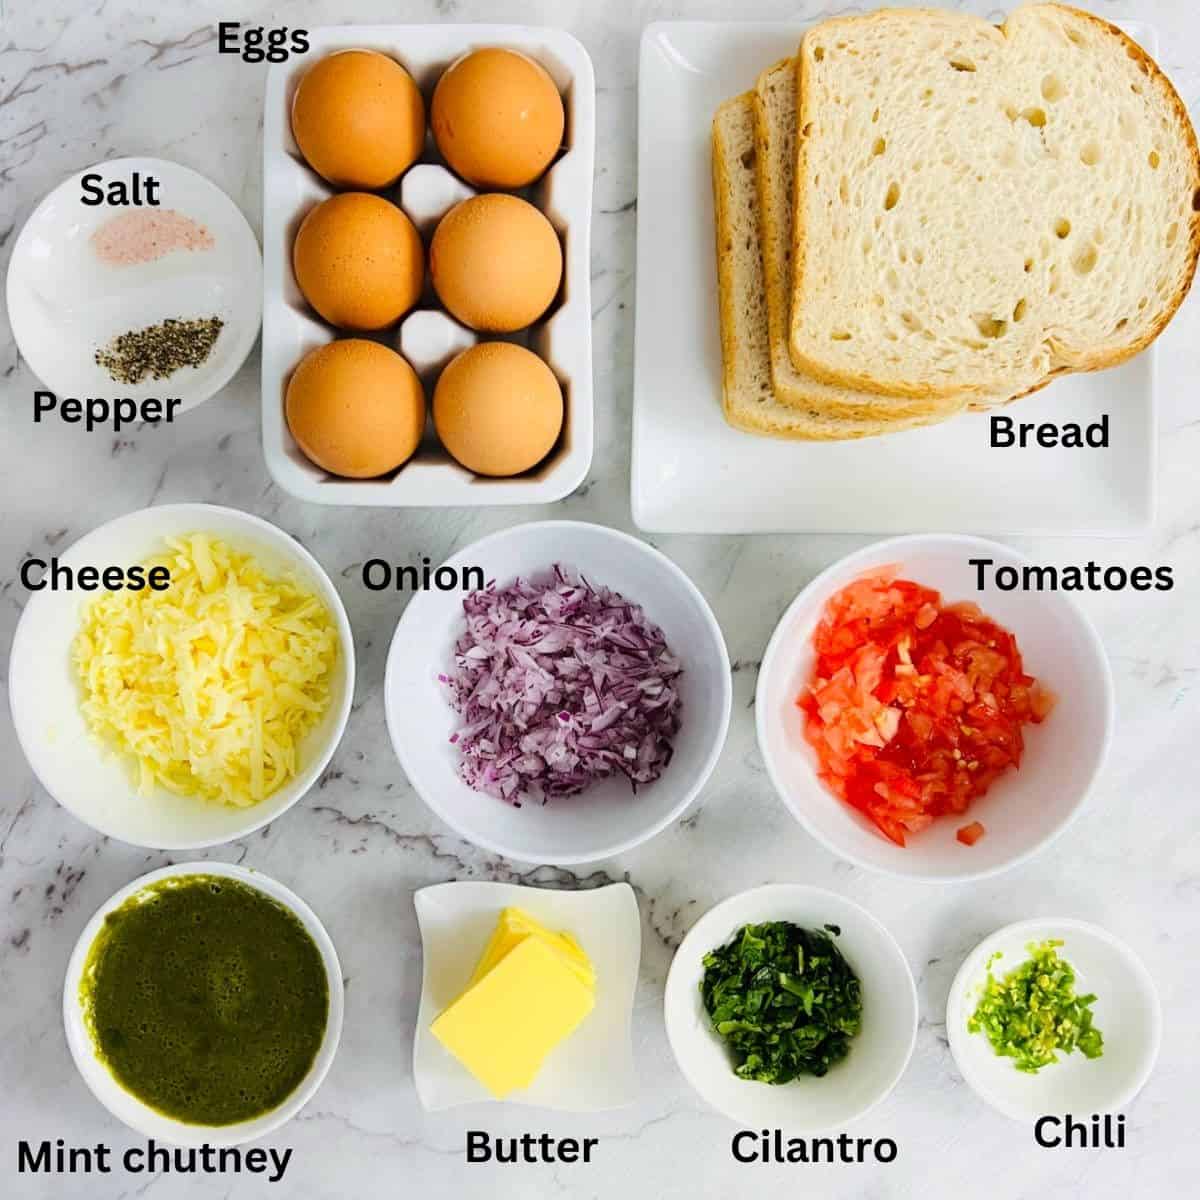 bread omelet ingredients.